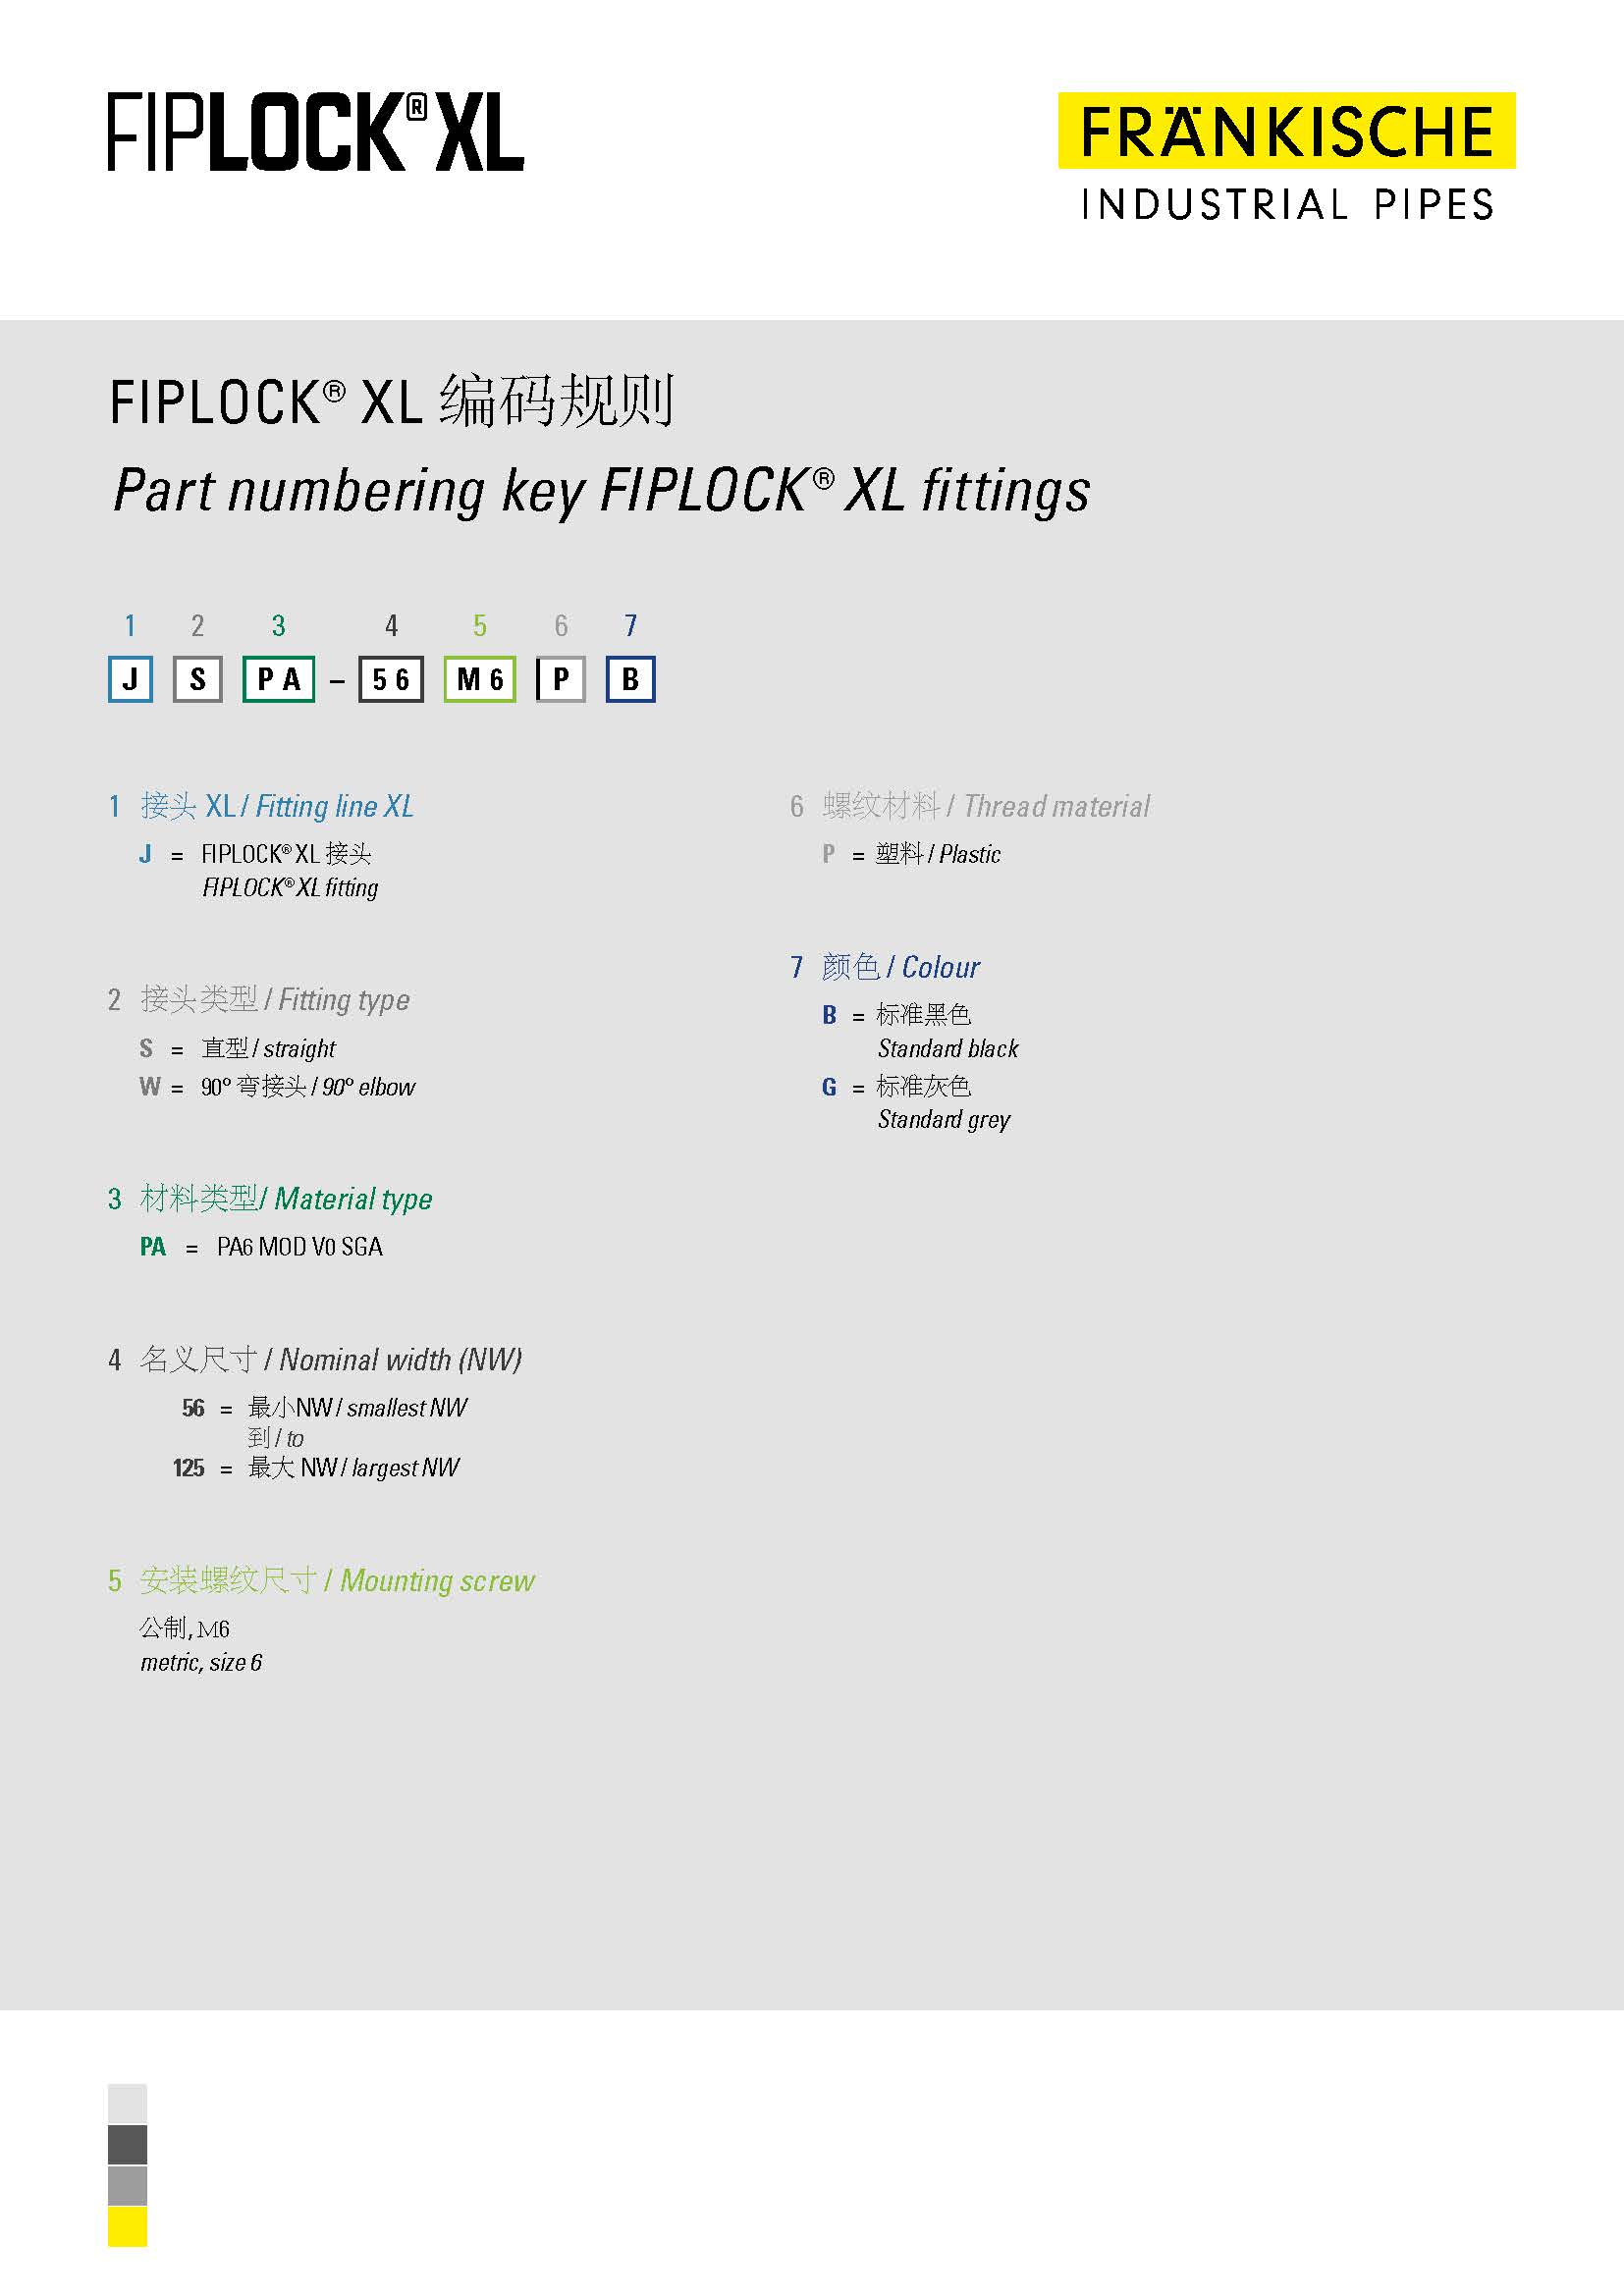 FIPLOCK® XL 编码规则 (148 KB)